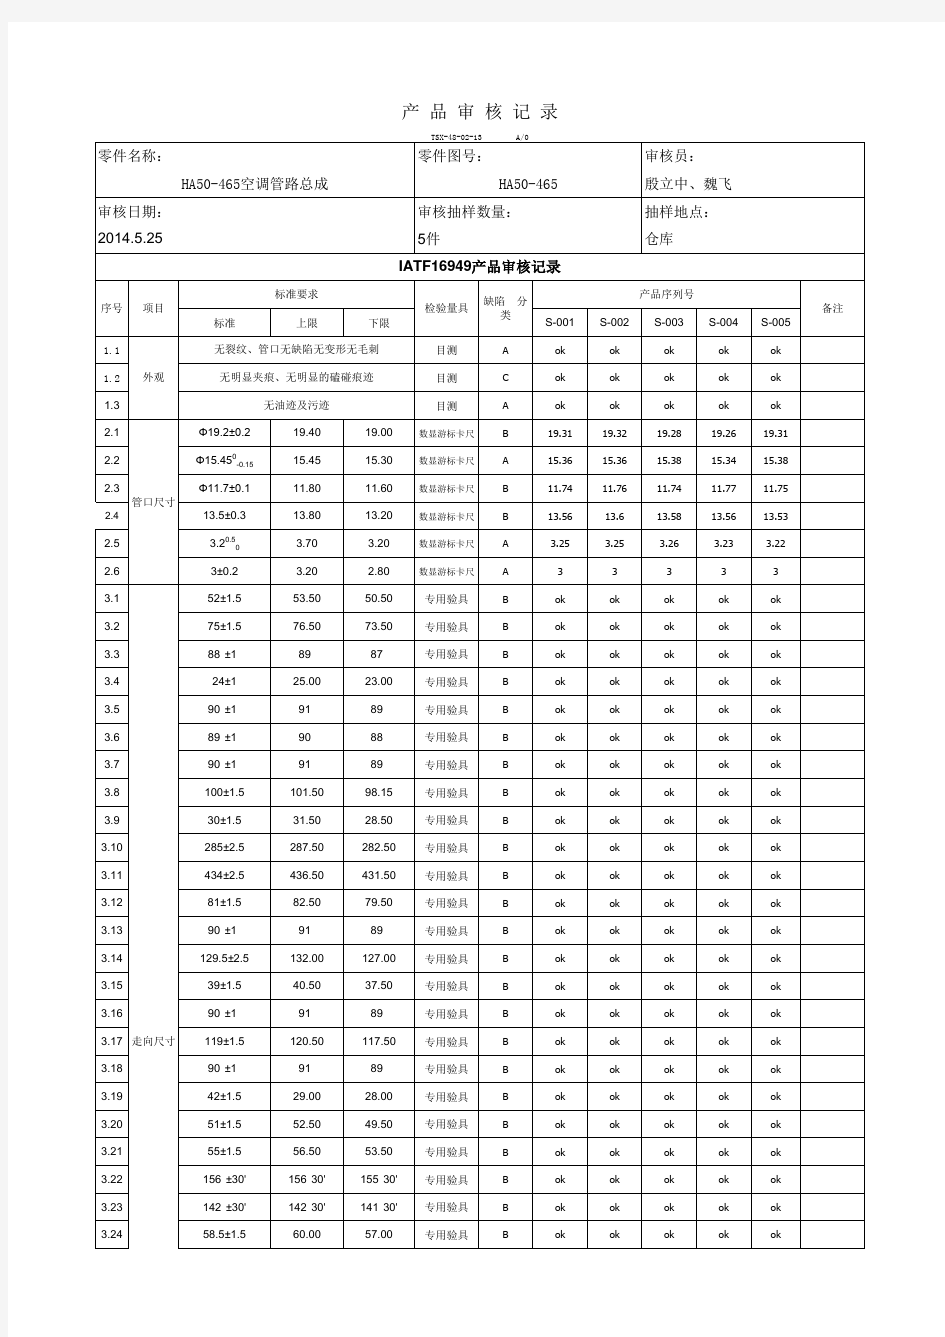 IATF16949产品审核记录表